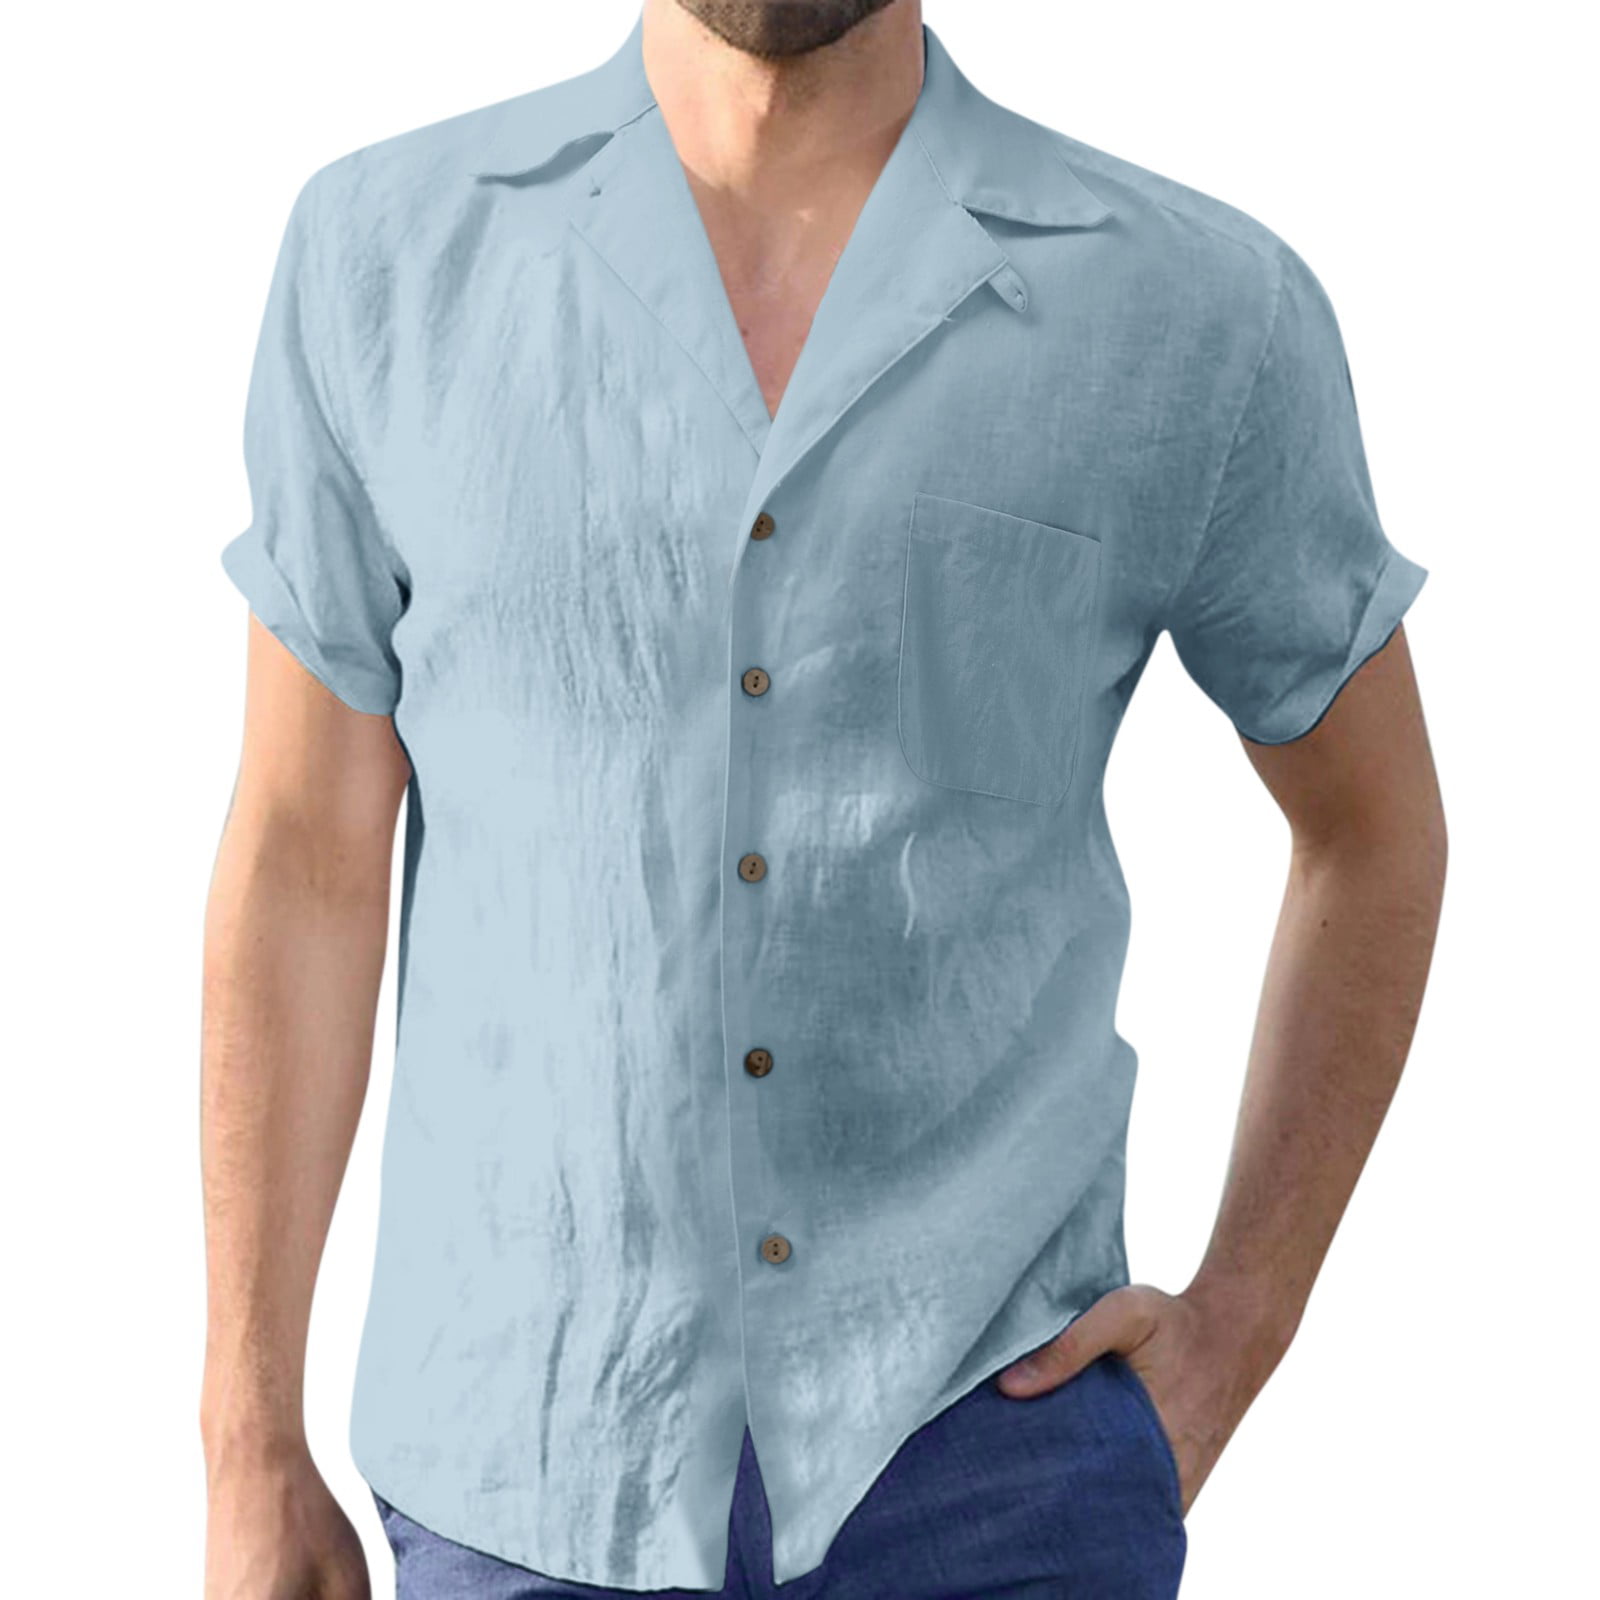 adviicd Blue Button Down Shirt Men Mens Short Sleeve Shirts Button